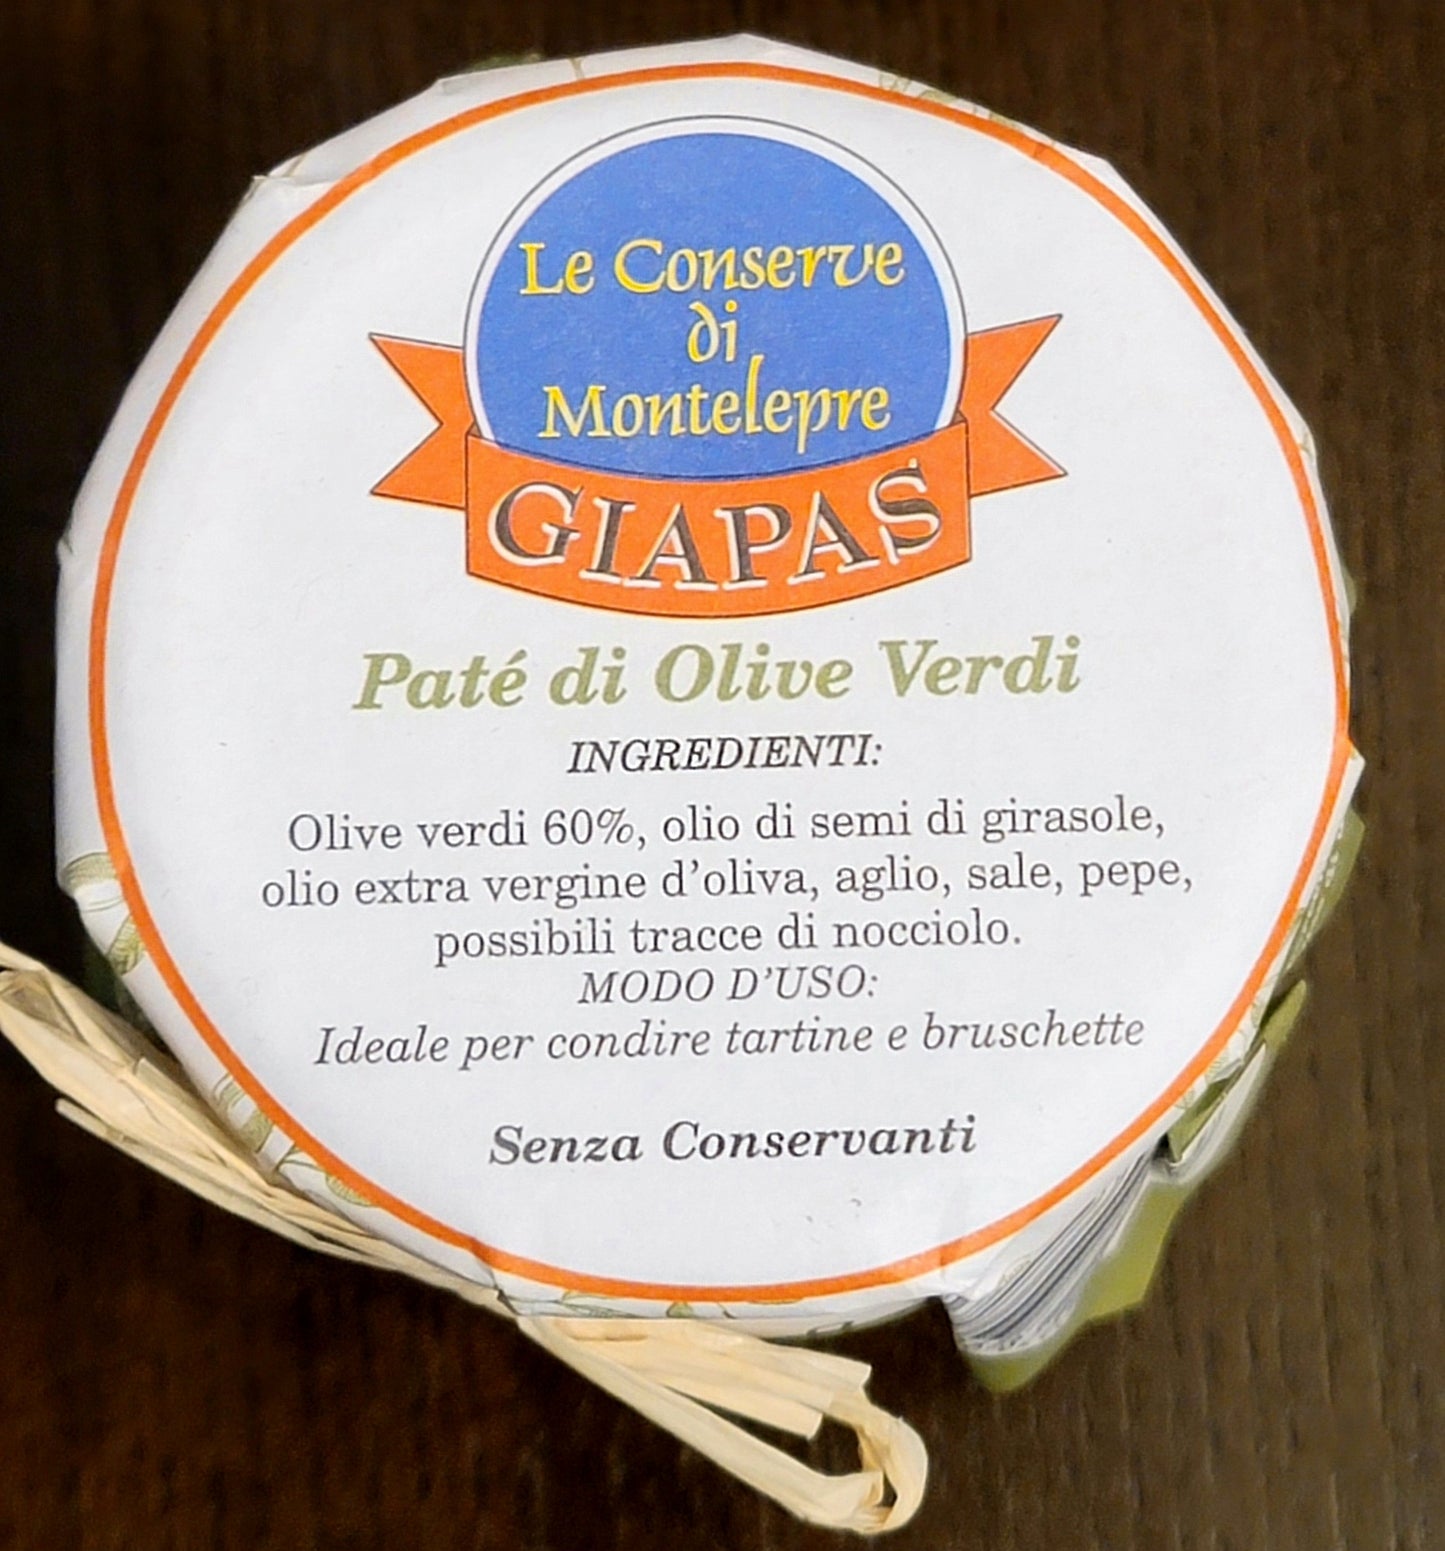 Giapas Le Conserve Di Montelepre Sicilian Green Olive Paté